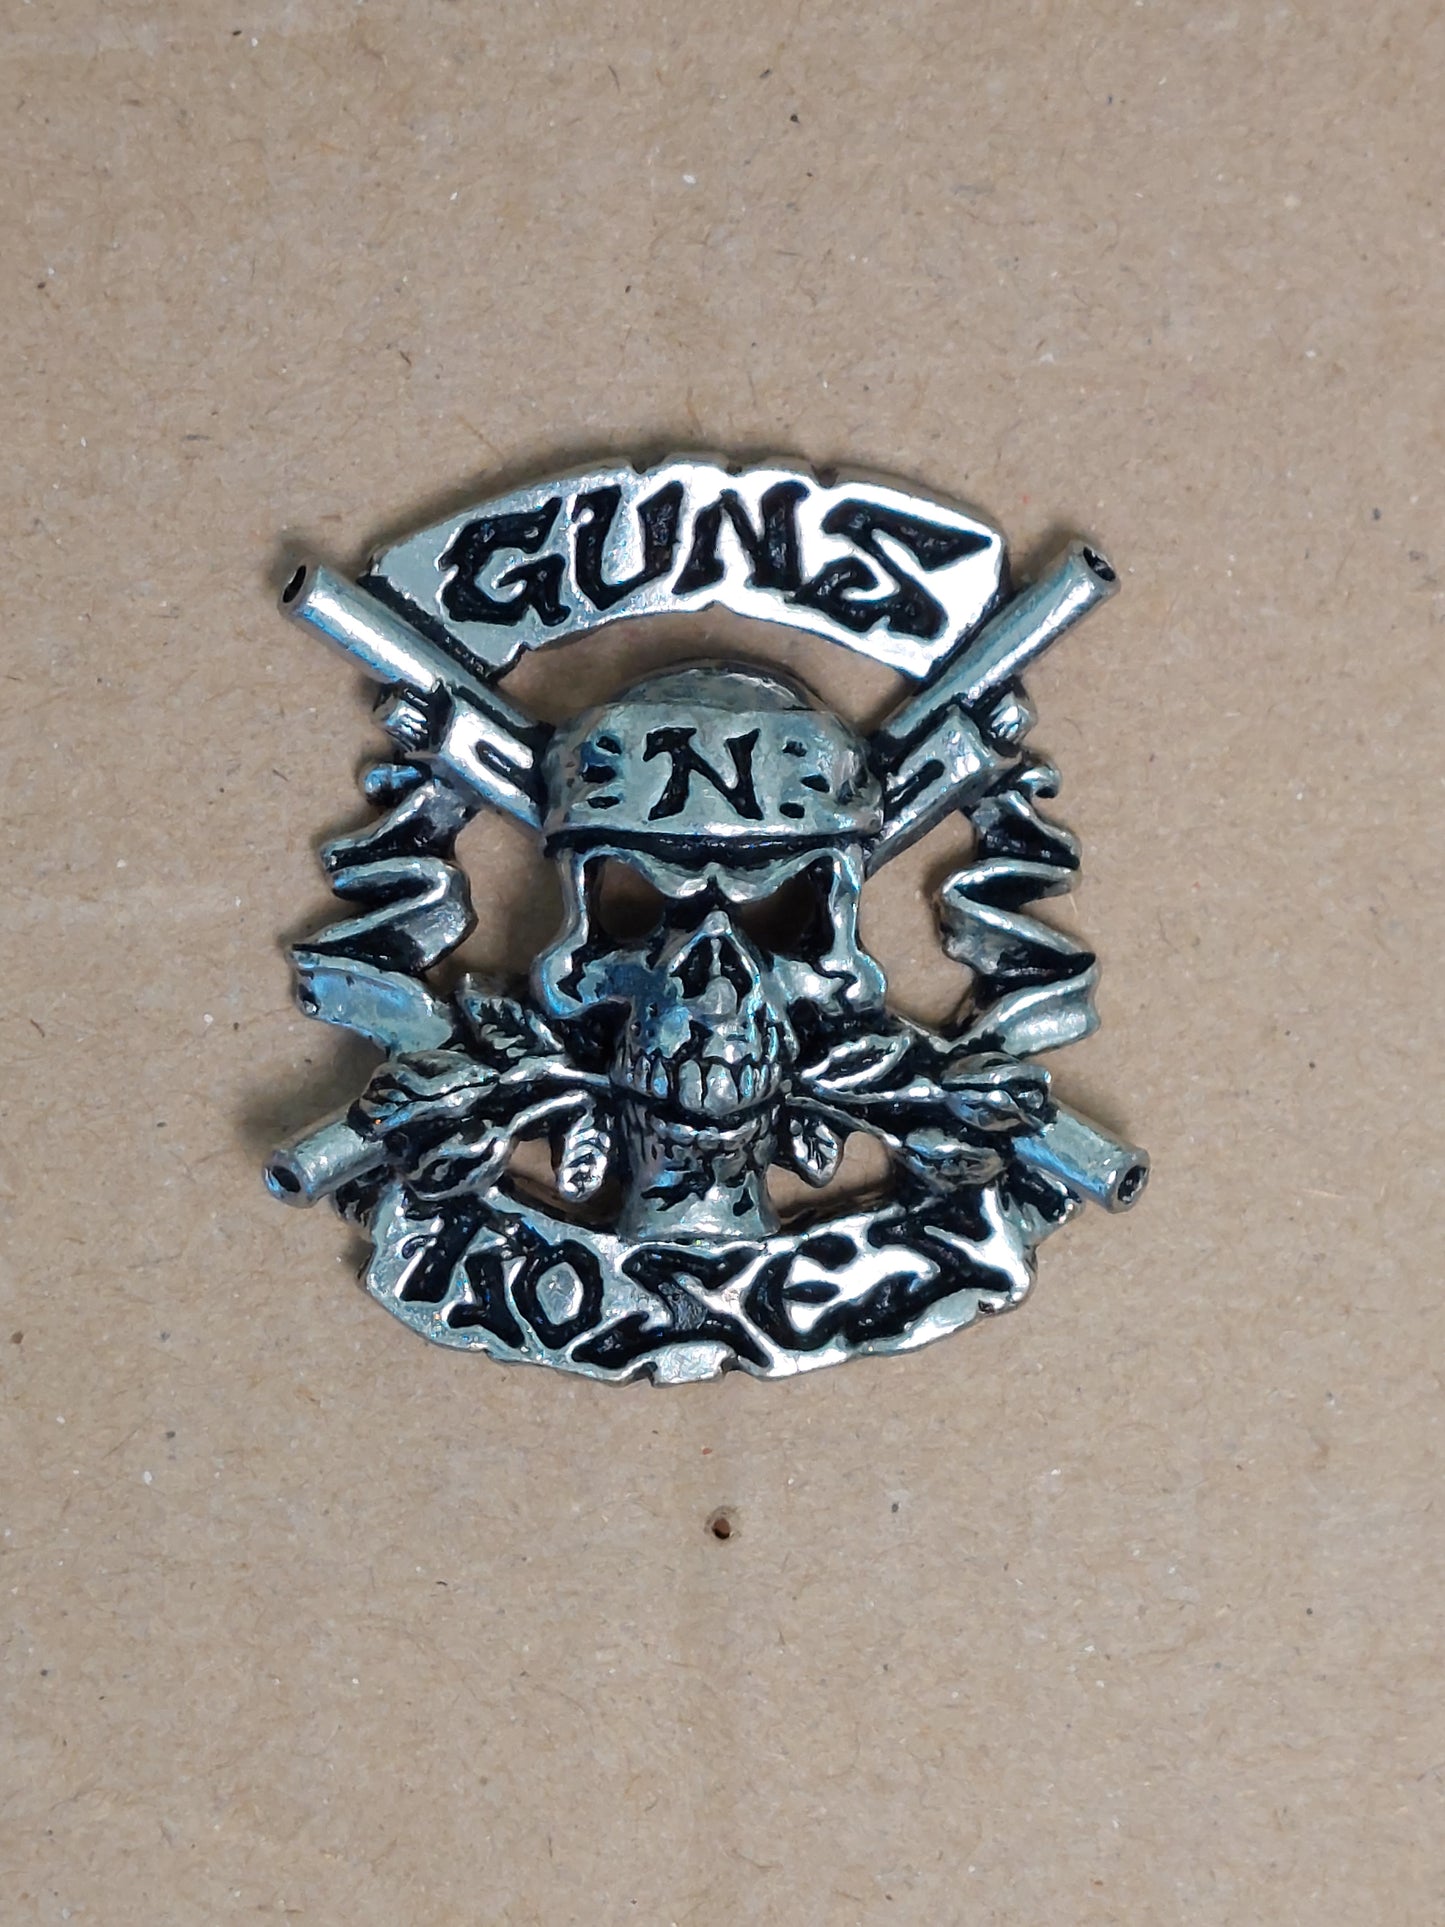 Guns n roses pin badge